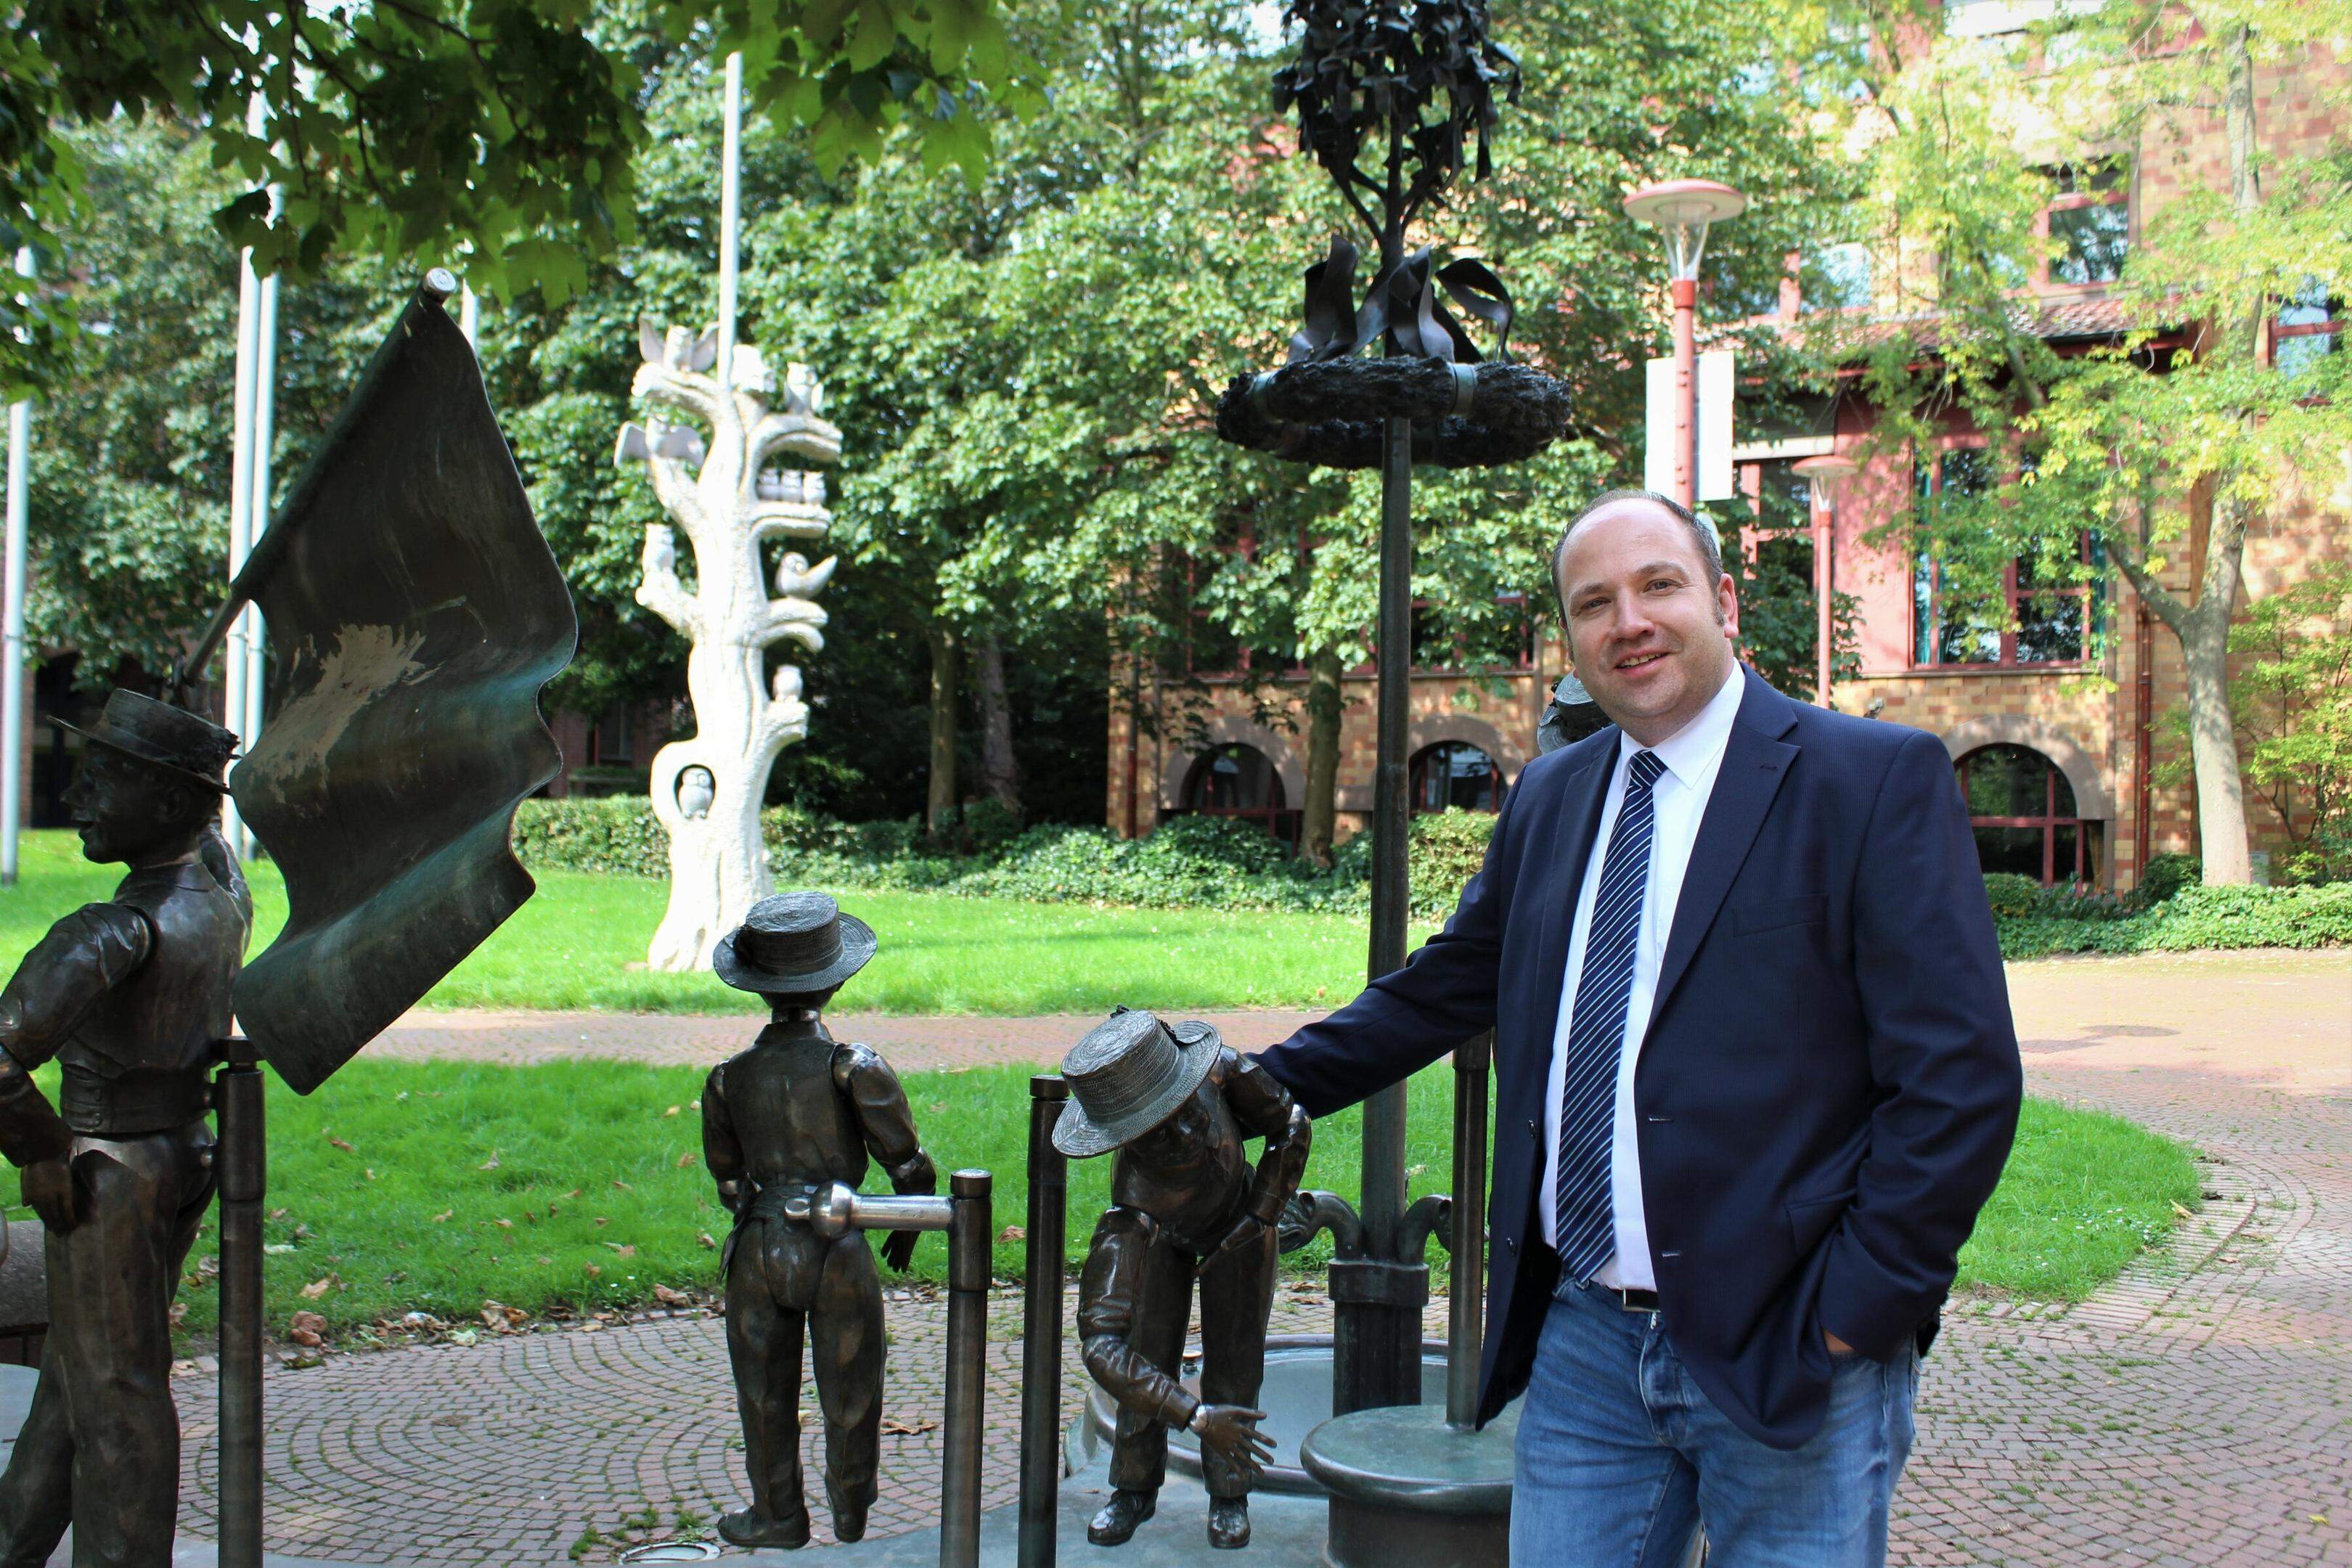 Das Antrittsfoto: Im September 2021 begann René Strotkötter seinen Job als Beigeordneter in Würselen